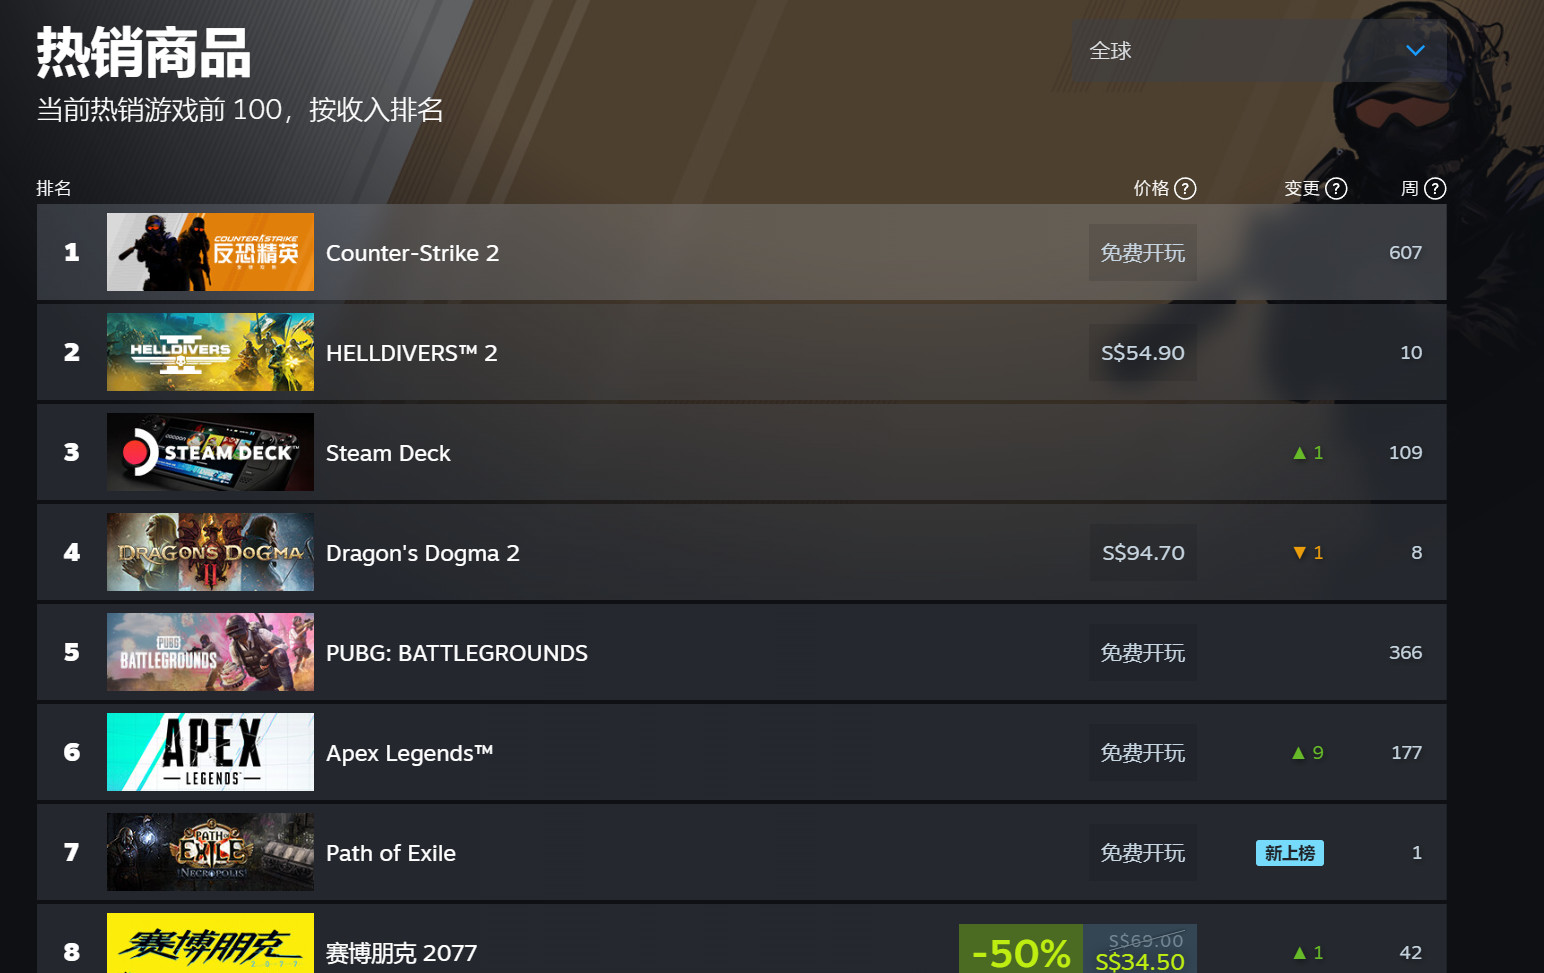 绝地潜兵2击败龙之信条2重返Steam销量榜榜首